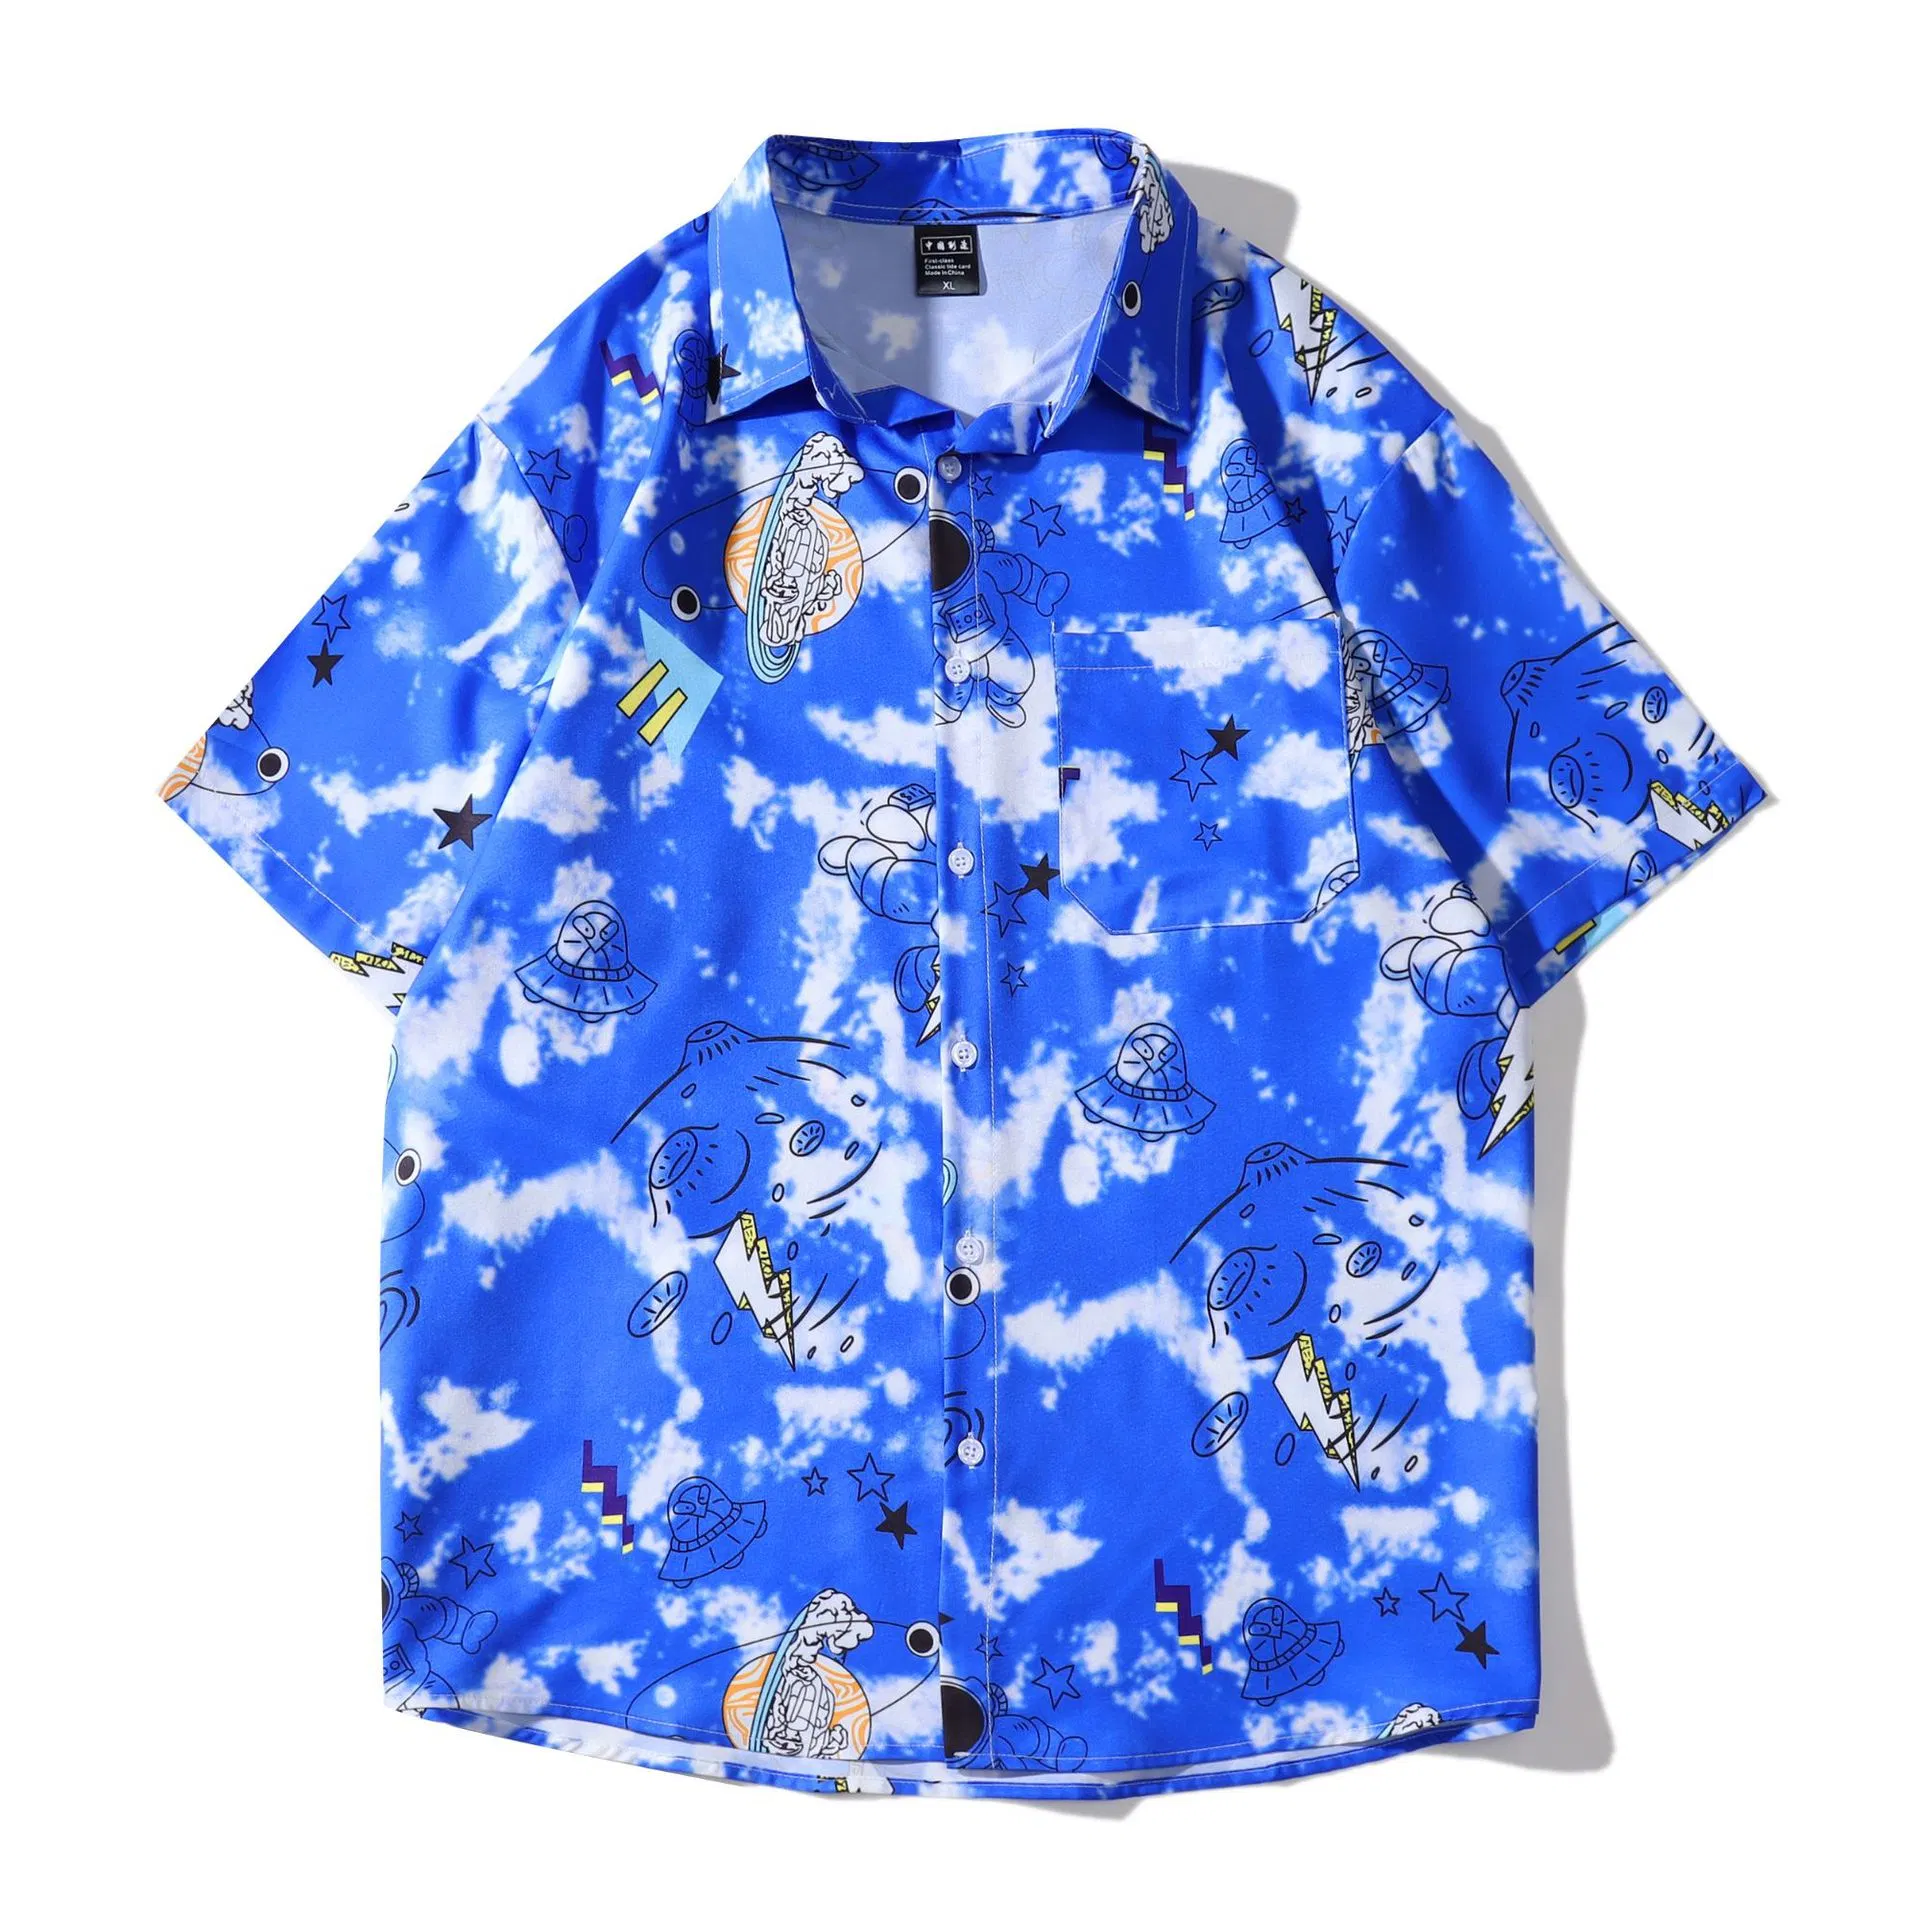 Factory Wholesale/Supplier Summer Hot Design Cotton Short Sleeve 3D Printed Pattern Casual Loose Beach Hawaiian Shirt Beach Shirts Men